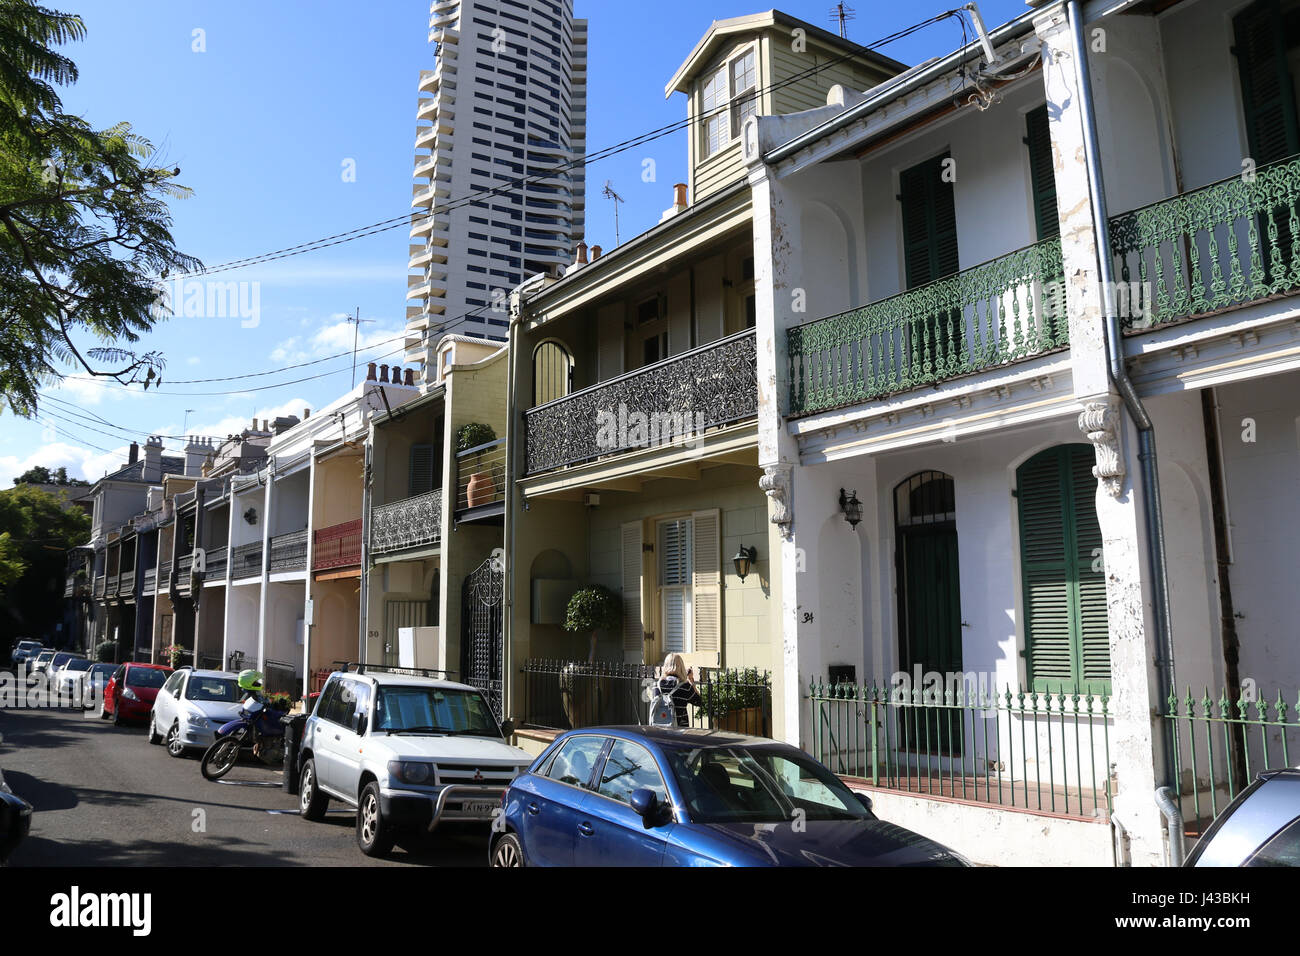 Terraced houses on Thomson Street, Darlinghurst in Sydney, Australia. Stock Photo